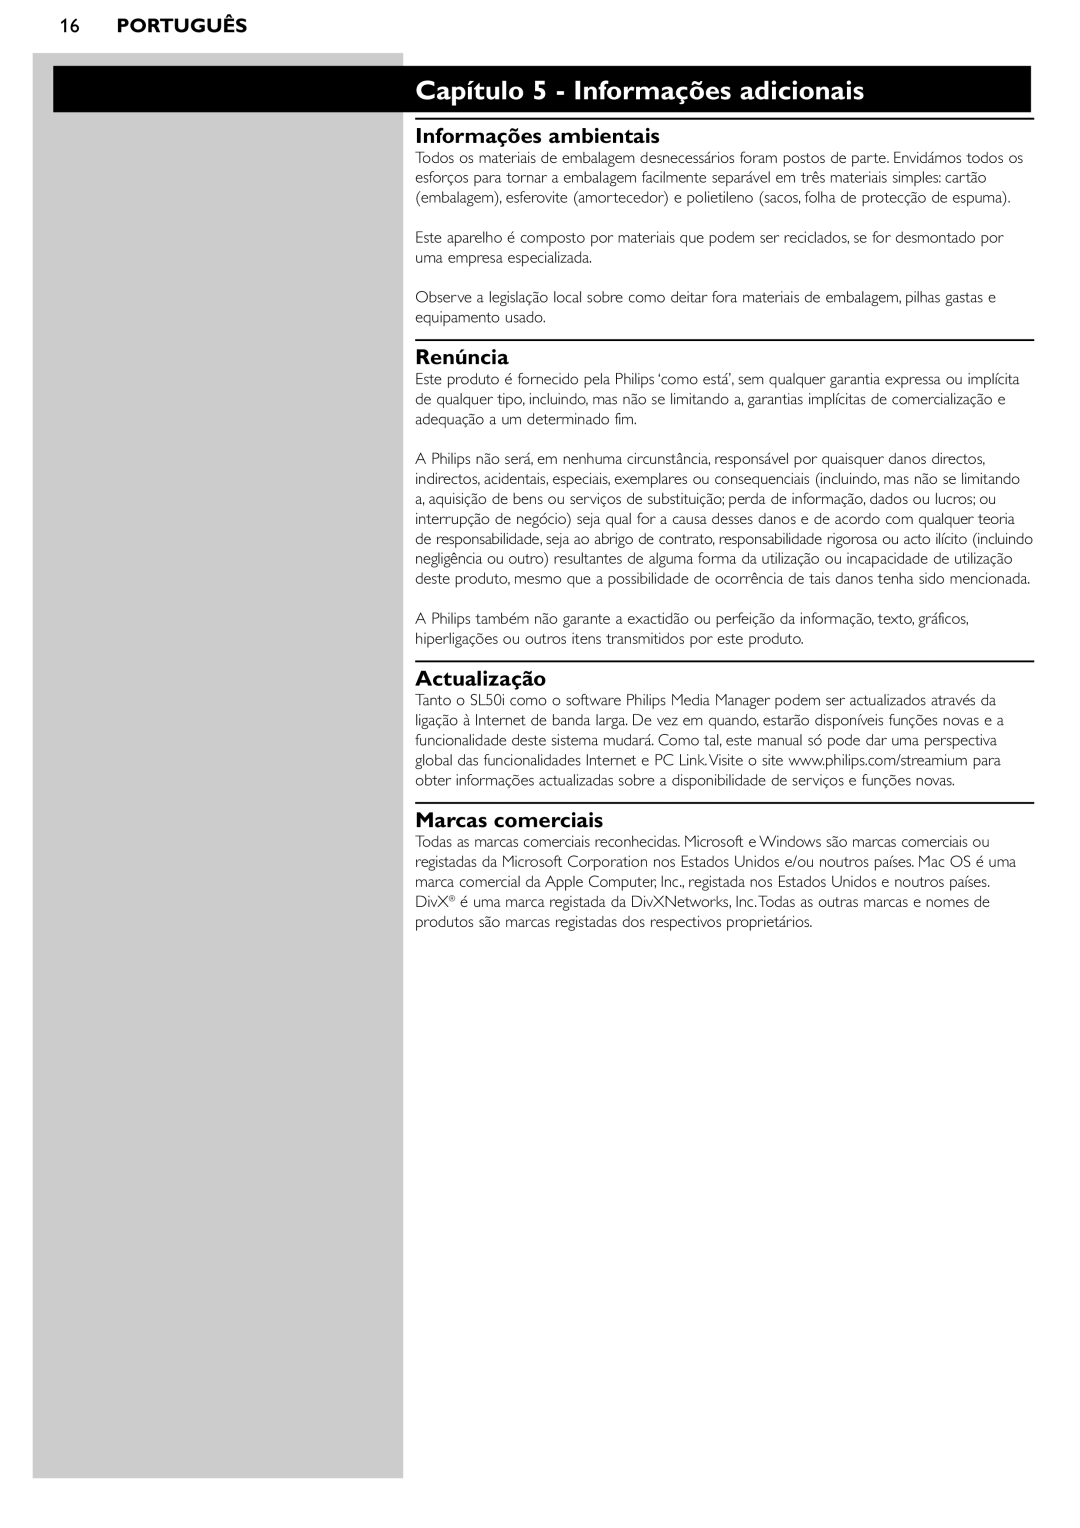 Philips SL50i manual Capítulo 5 - Informações adicionais, Informações ambientais, Renúncia, Actualização, Marcas comerciais 